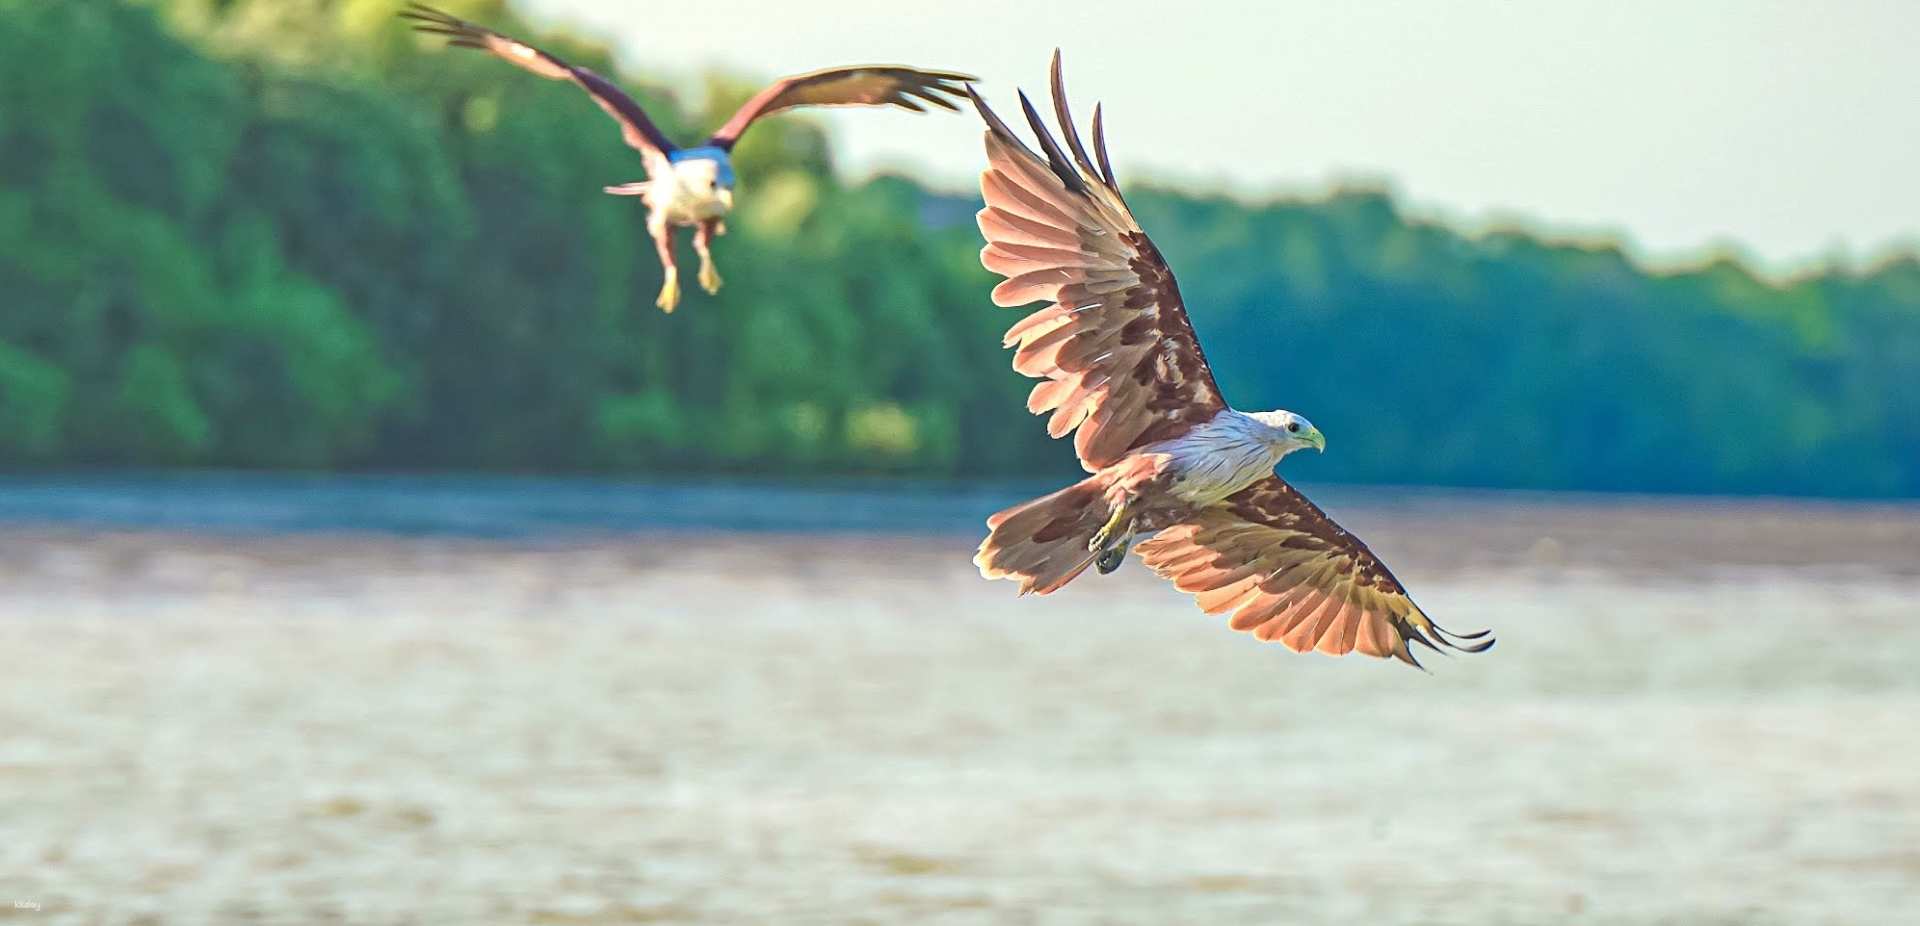 馬來西亞-瓜拉雪蘭莪餵鷹體驗